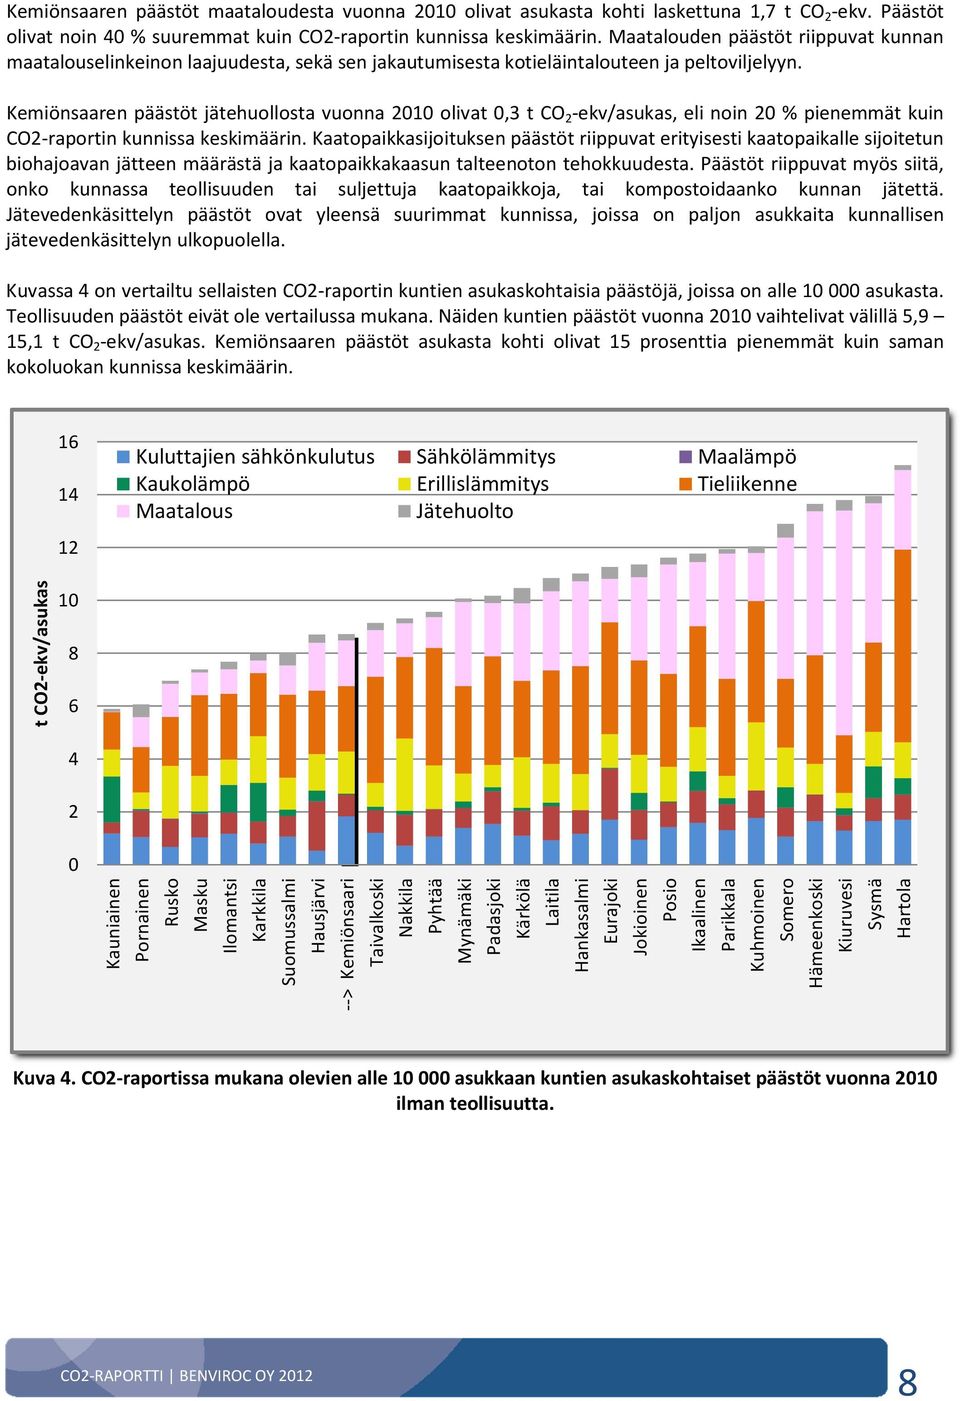 Kemiönsaaren päästöt jätehuollosta vuonna 2010 olivat 0,3 t CO 2 -ekv/asukas, eli noin 20 % pienemmät kuin CO2-raportin kunnissa keskimäärin.